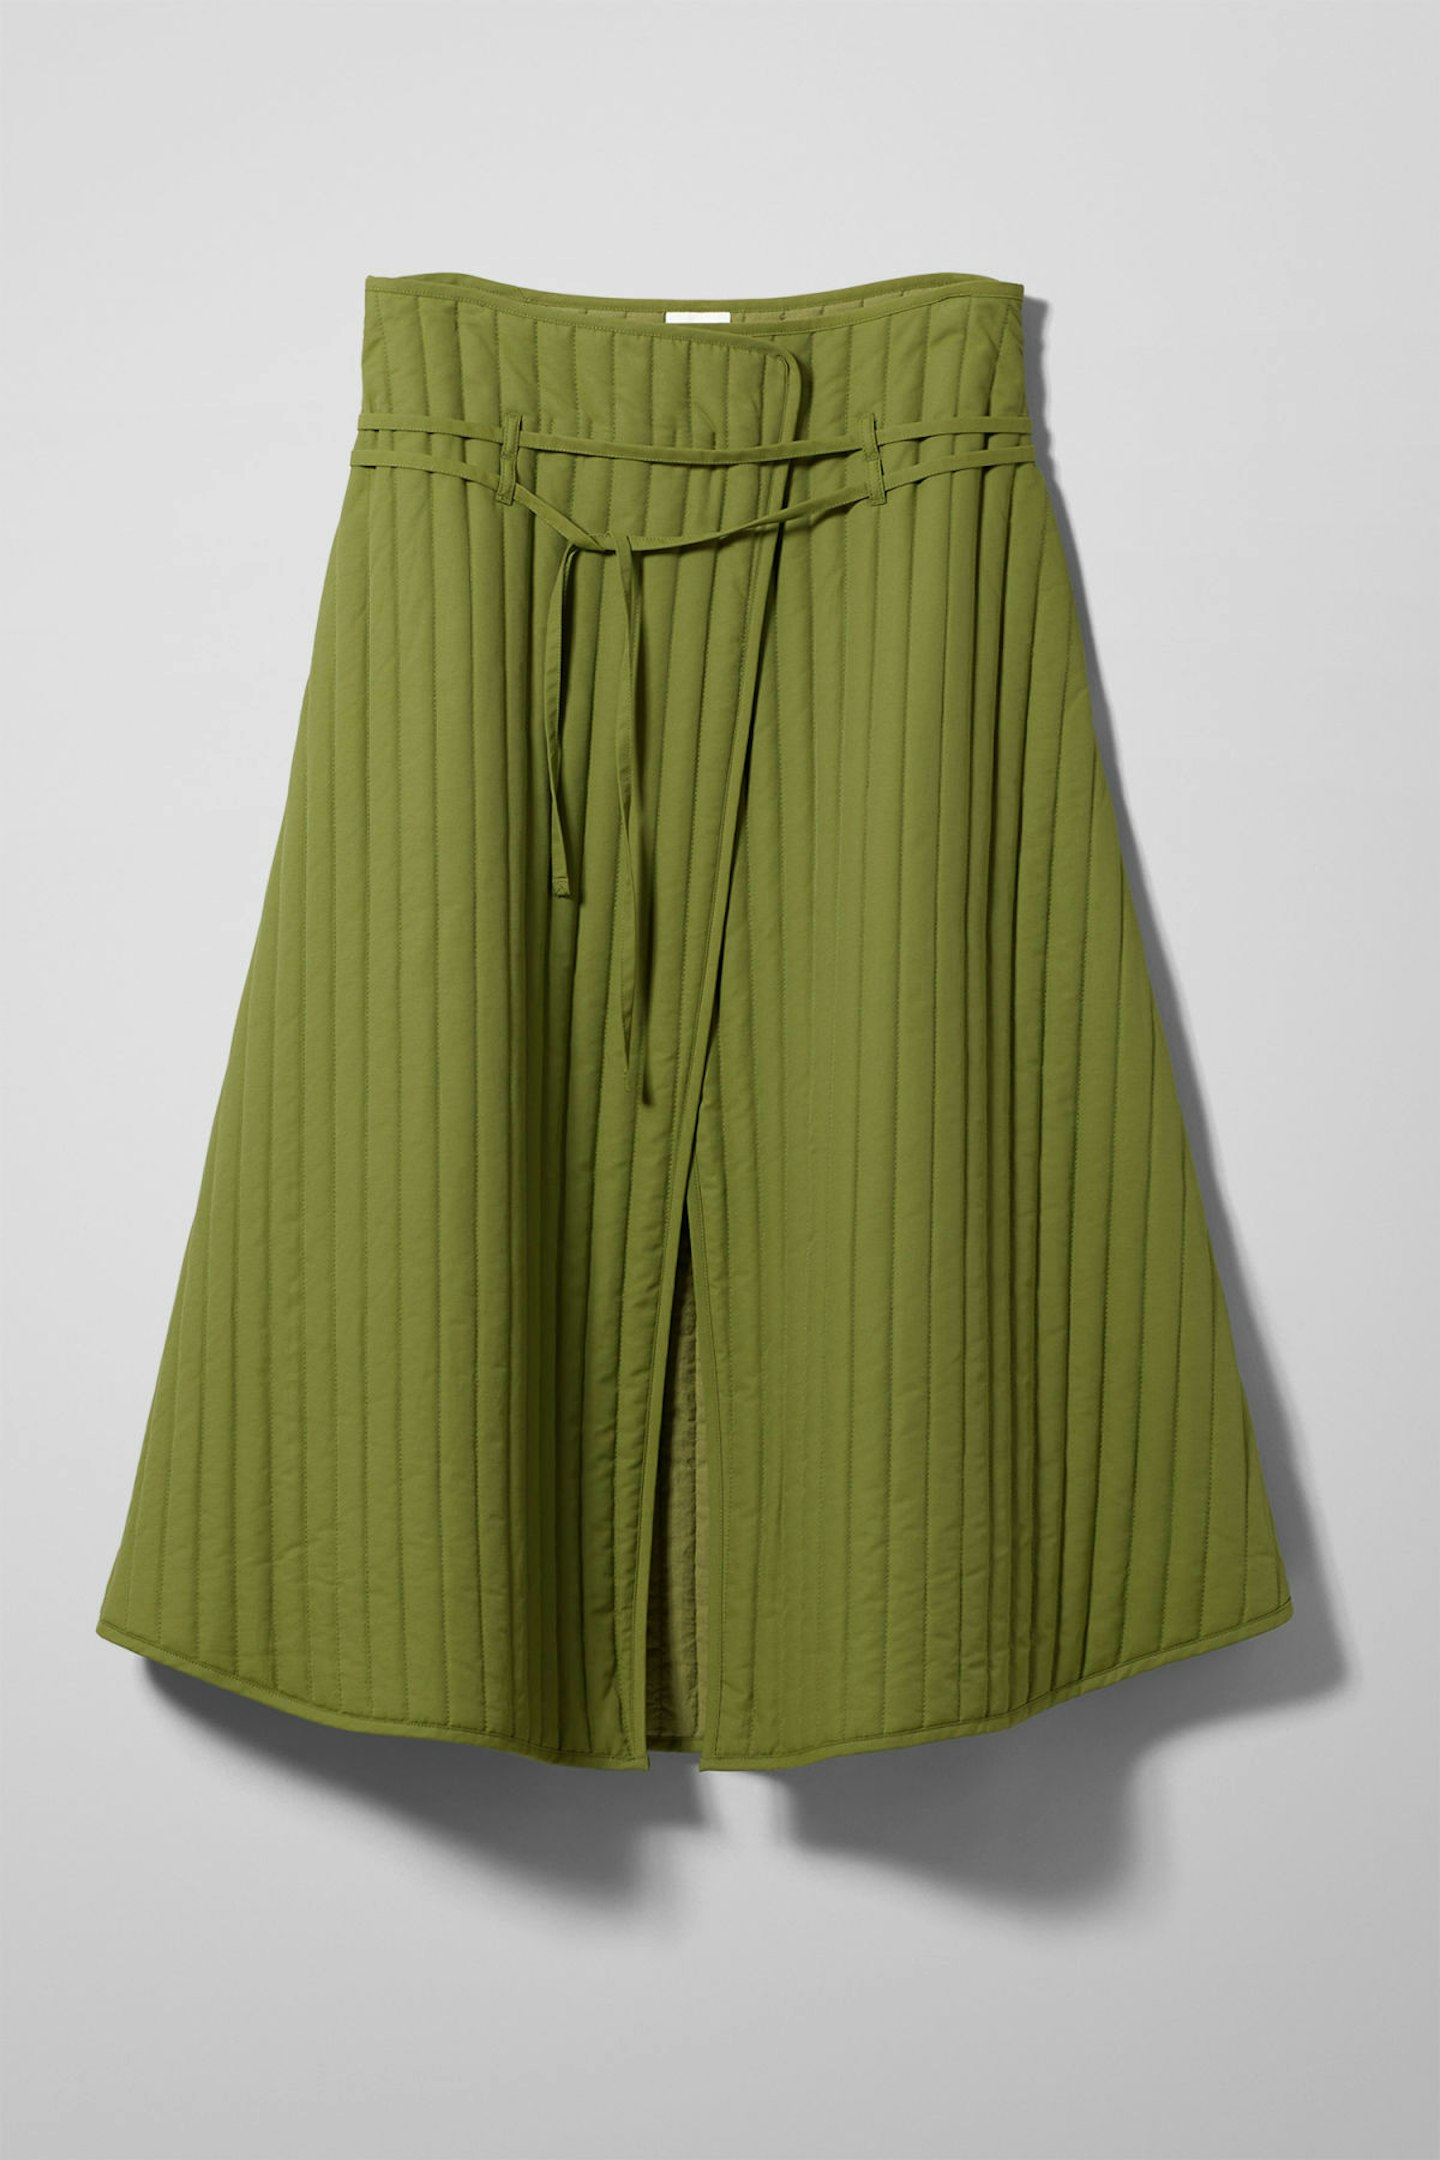 Weekday, Singu Quilted Skirt, £60